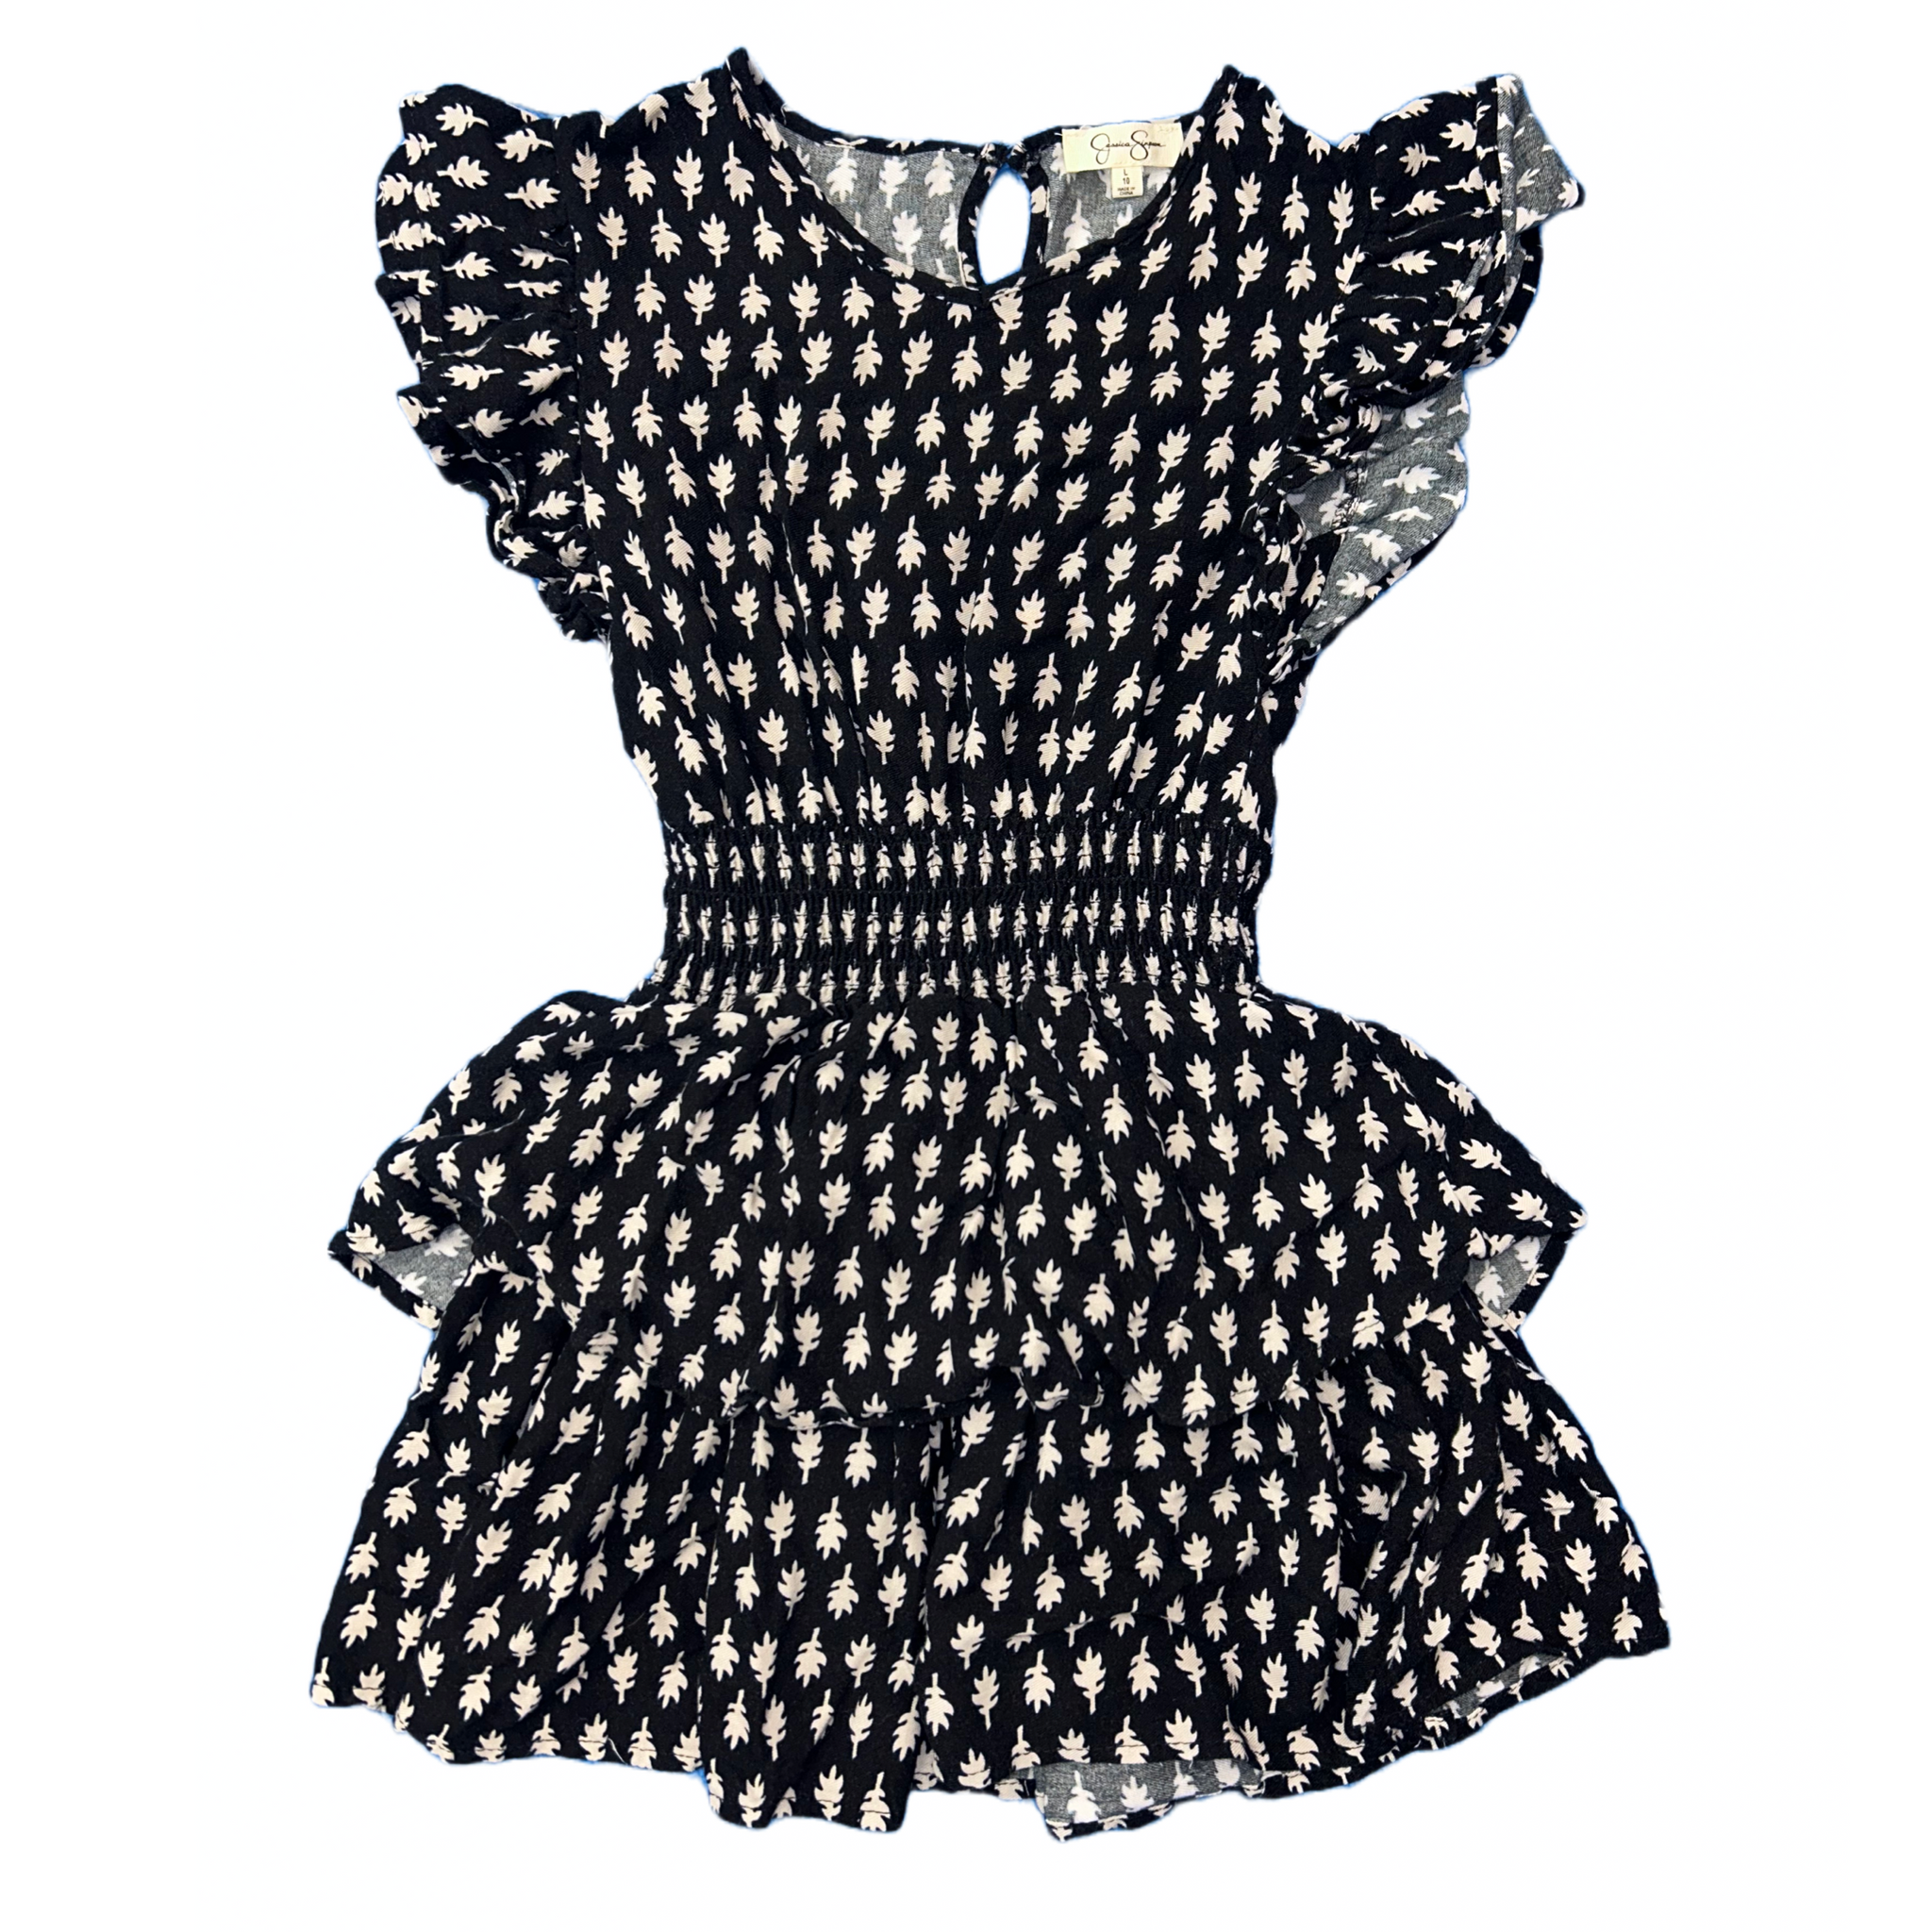 Dress by Jessica Simpson size 10